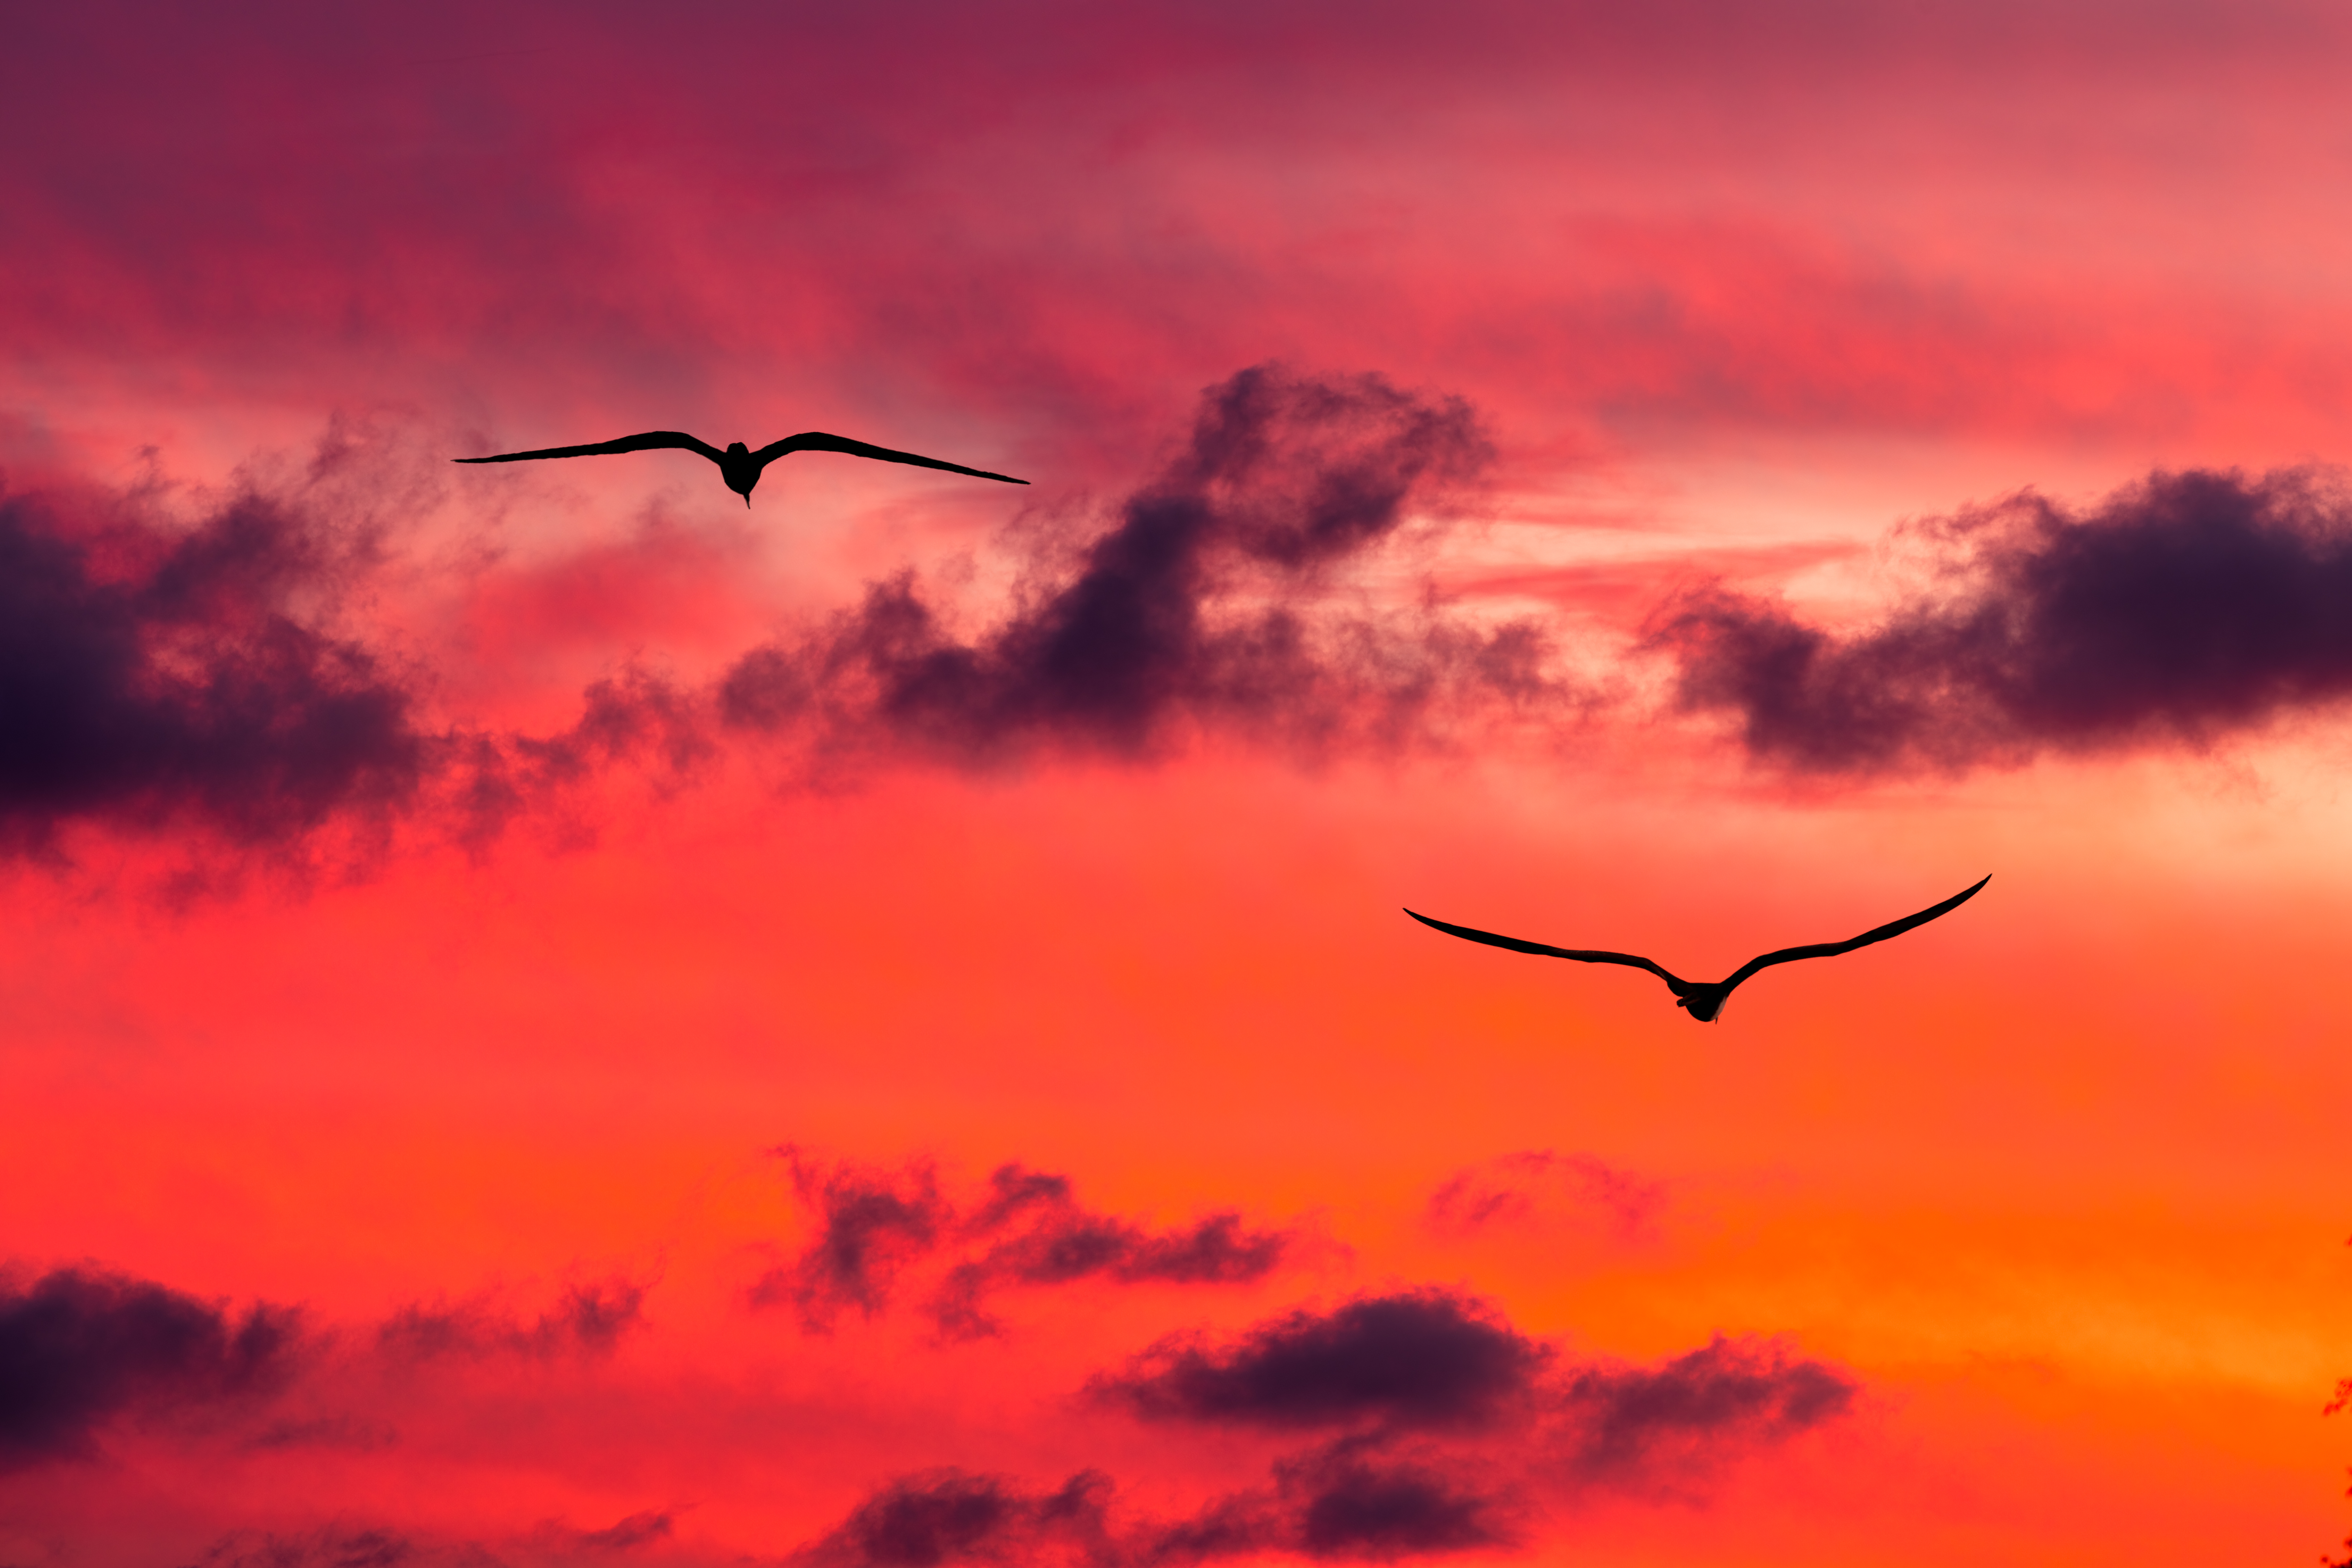 Bird silhouette flying in sunset sky